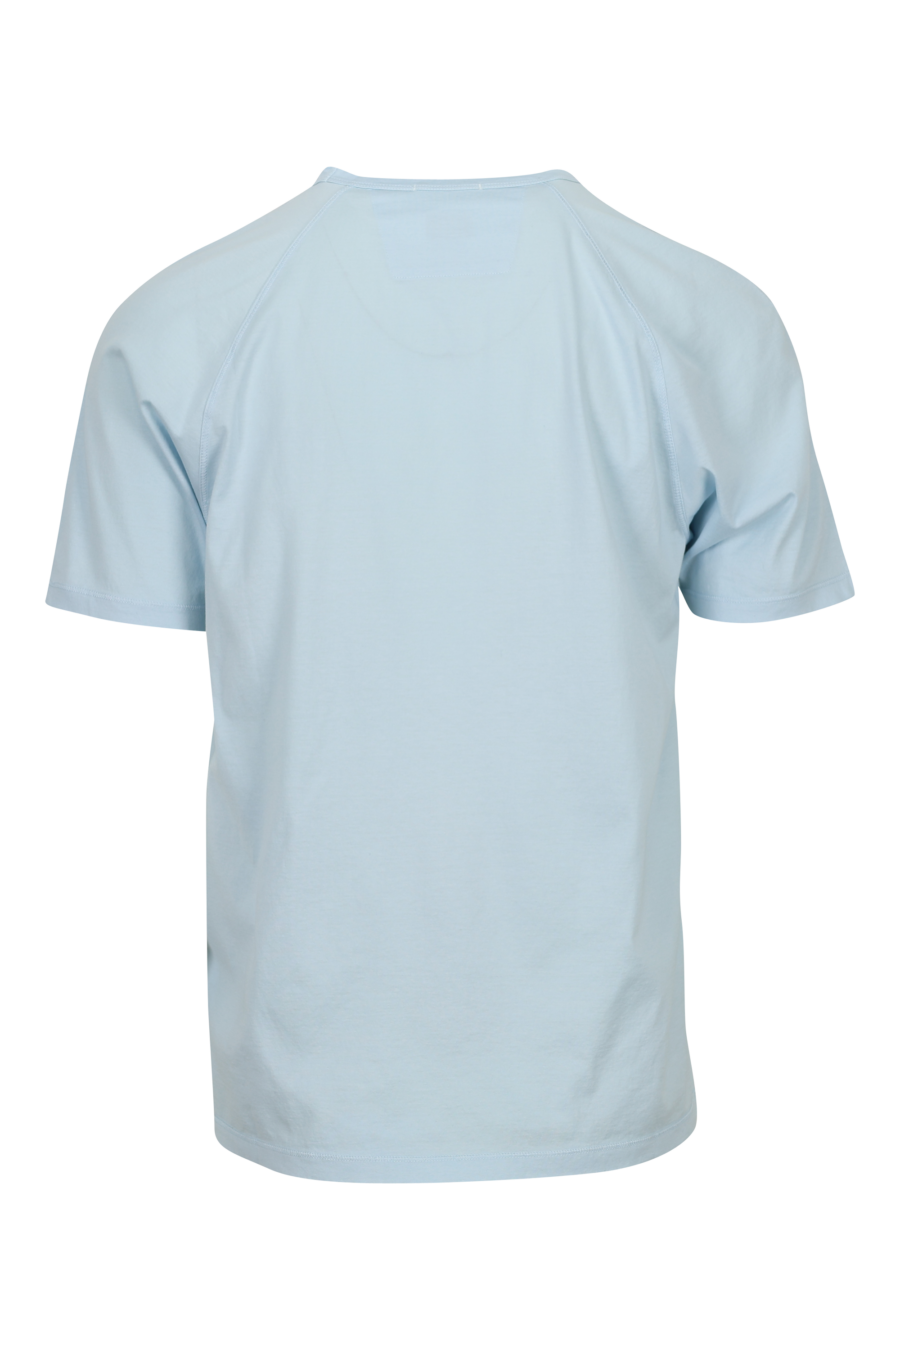 Camiseta azul claro con minilogo "cp" centrado - 7620943760644 1